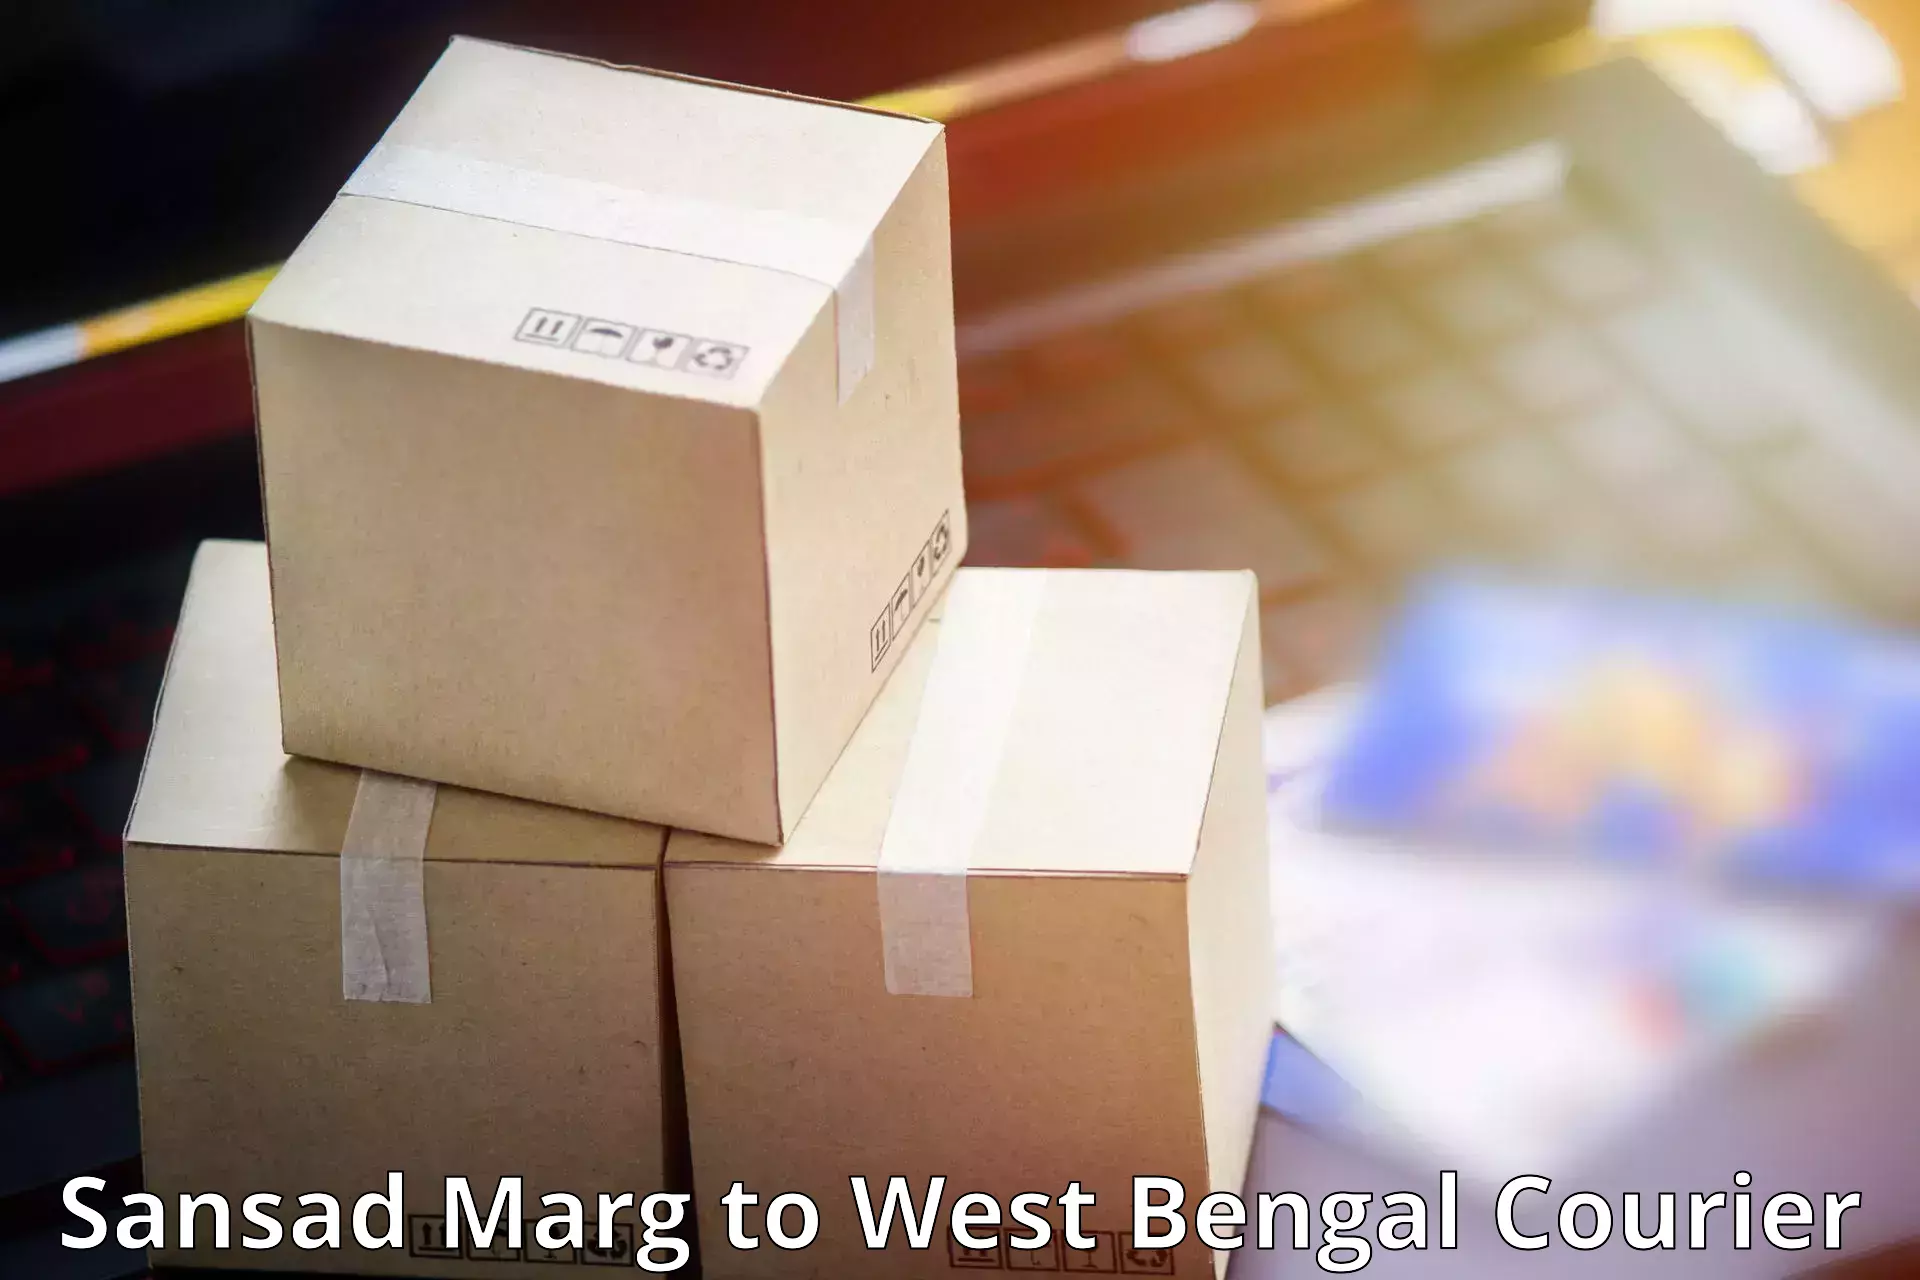 High-capacity parcel service Sansad Marg to Siliguri